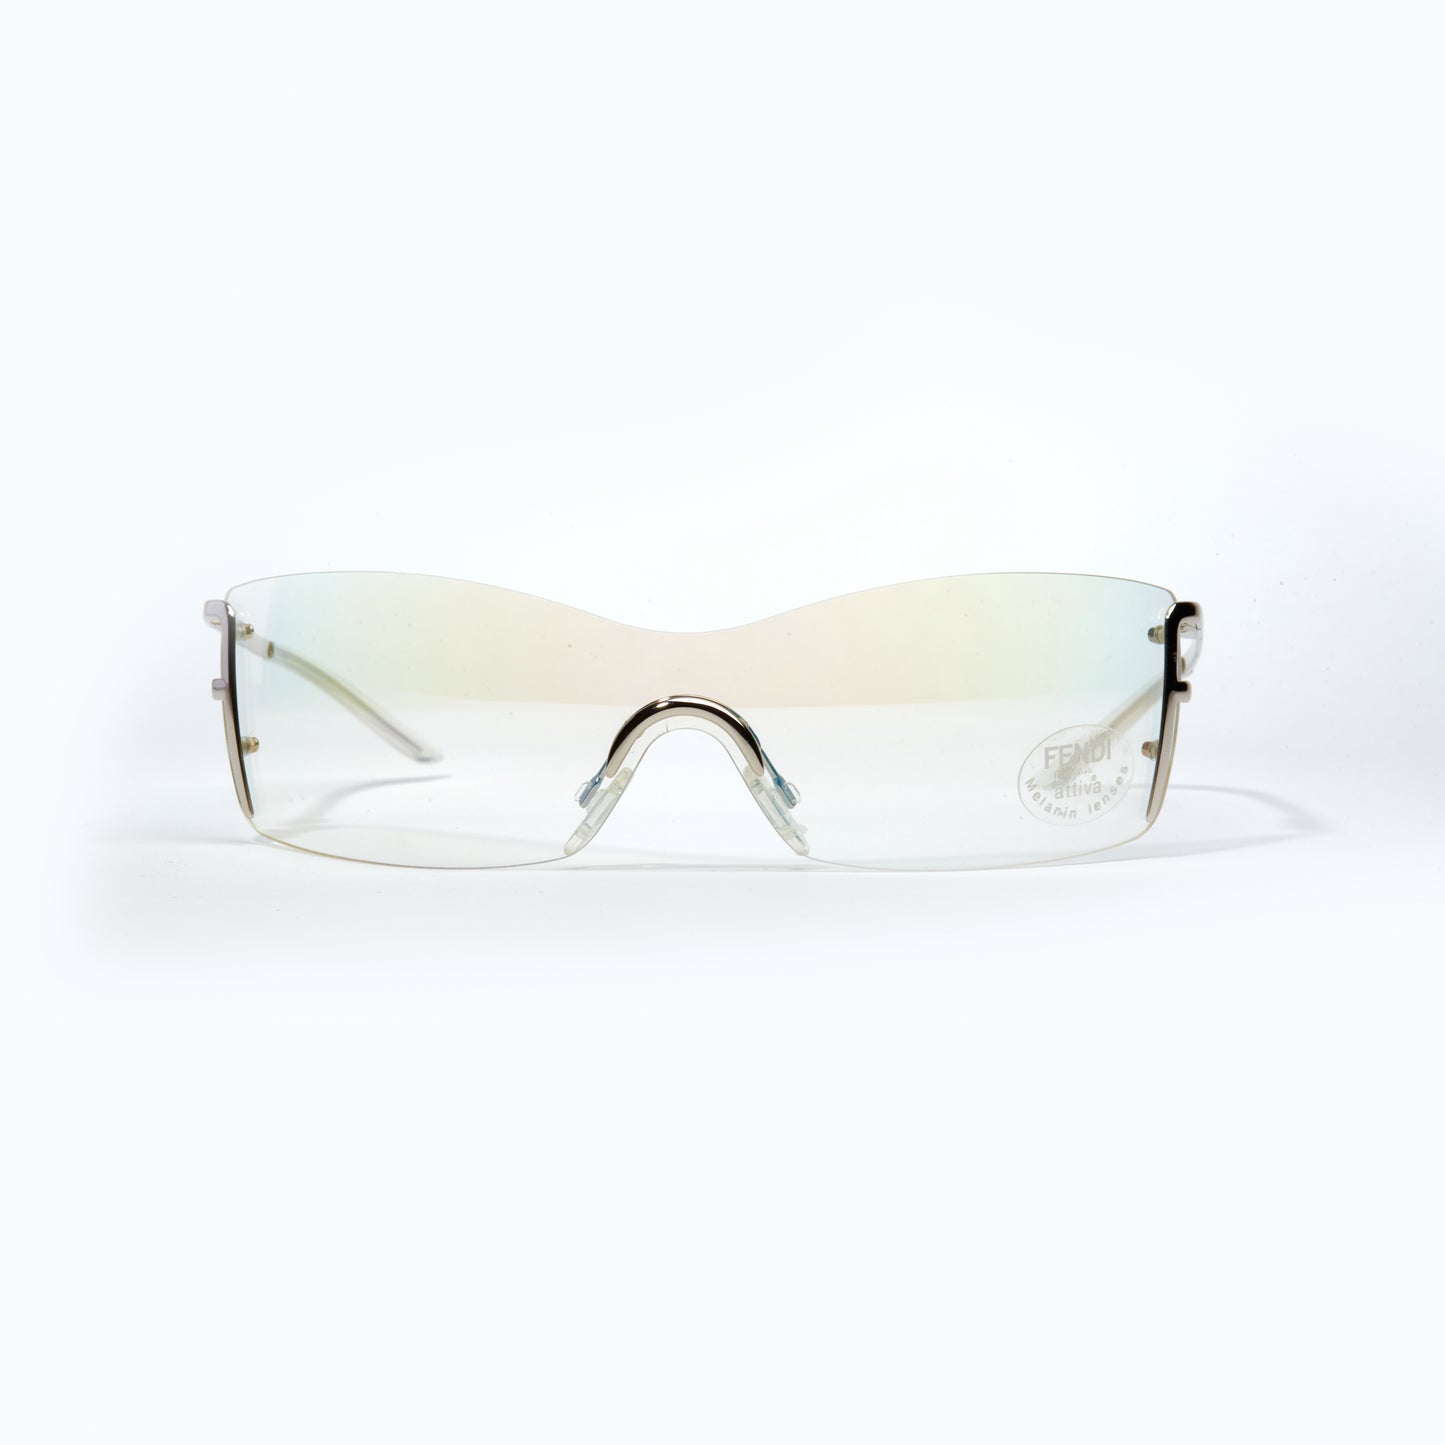 Vintage Fendi Transparent Silver Frame Sunglasses